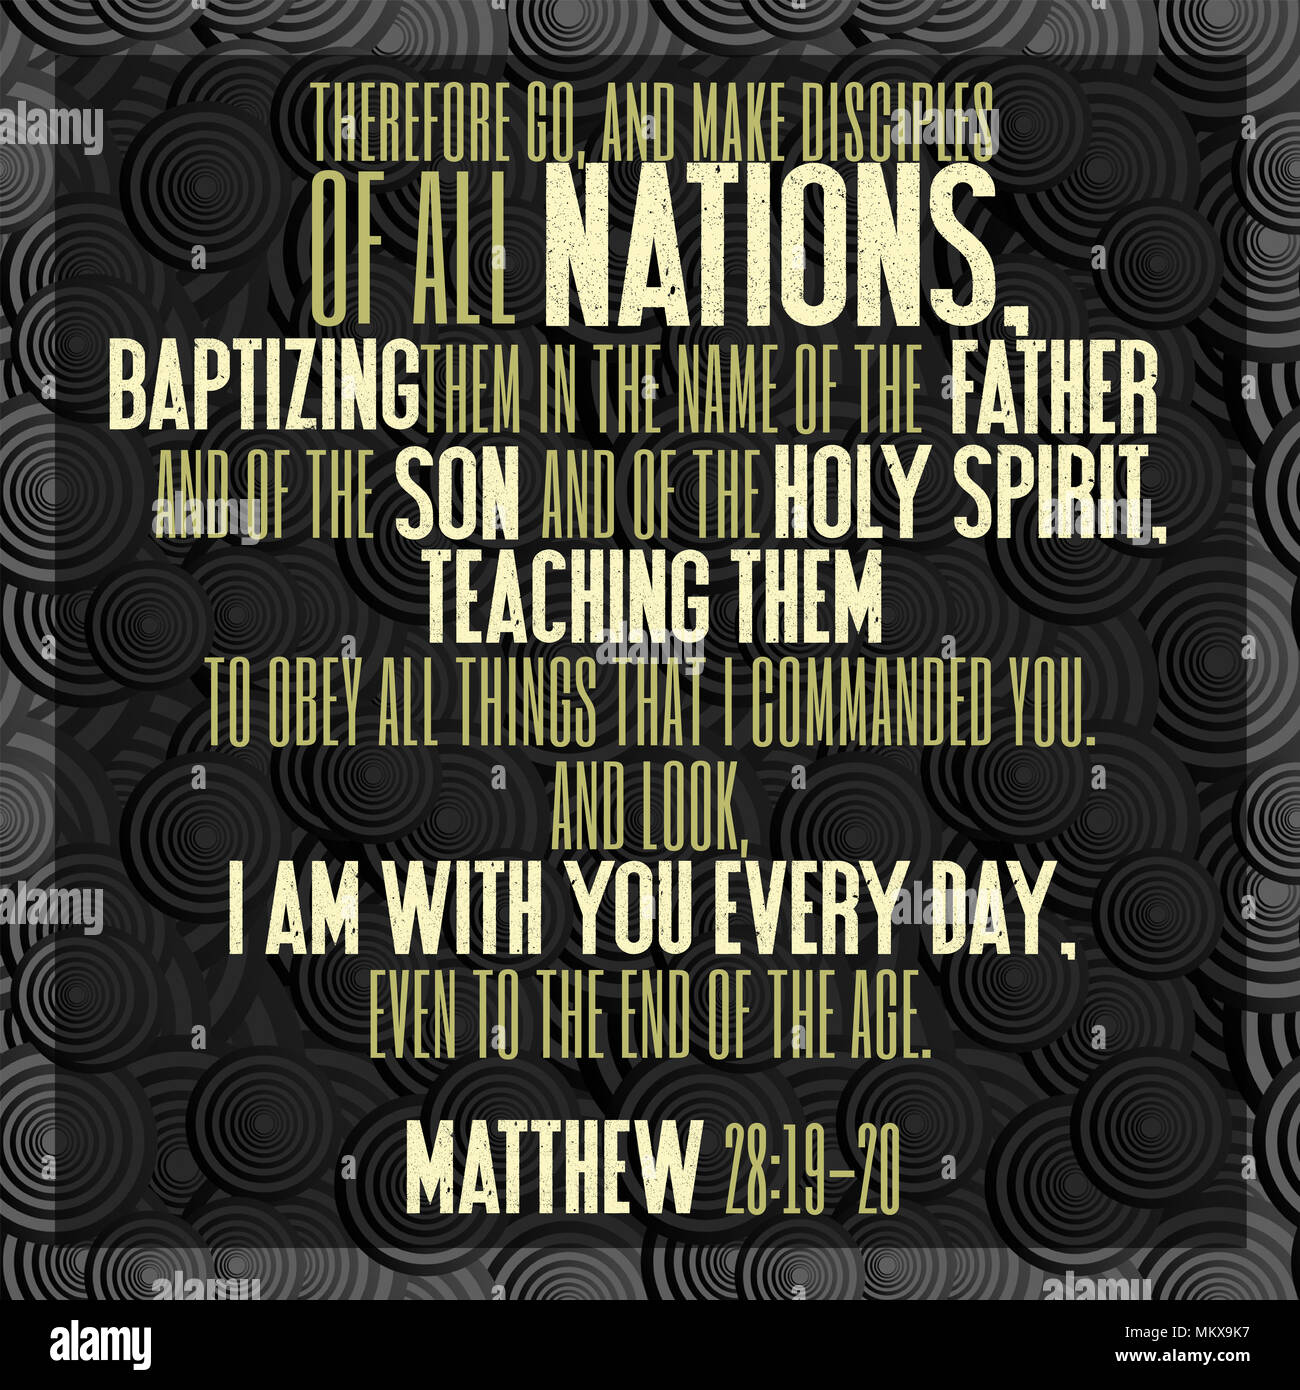 Por tanto, vayan y hagan discípulos de todas las naciones, bautizándolos en  el nombre del Padre y del Hijo y del Espíritu Santo... Mateo 28:19-20  Fotografía de stock - Alamy